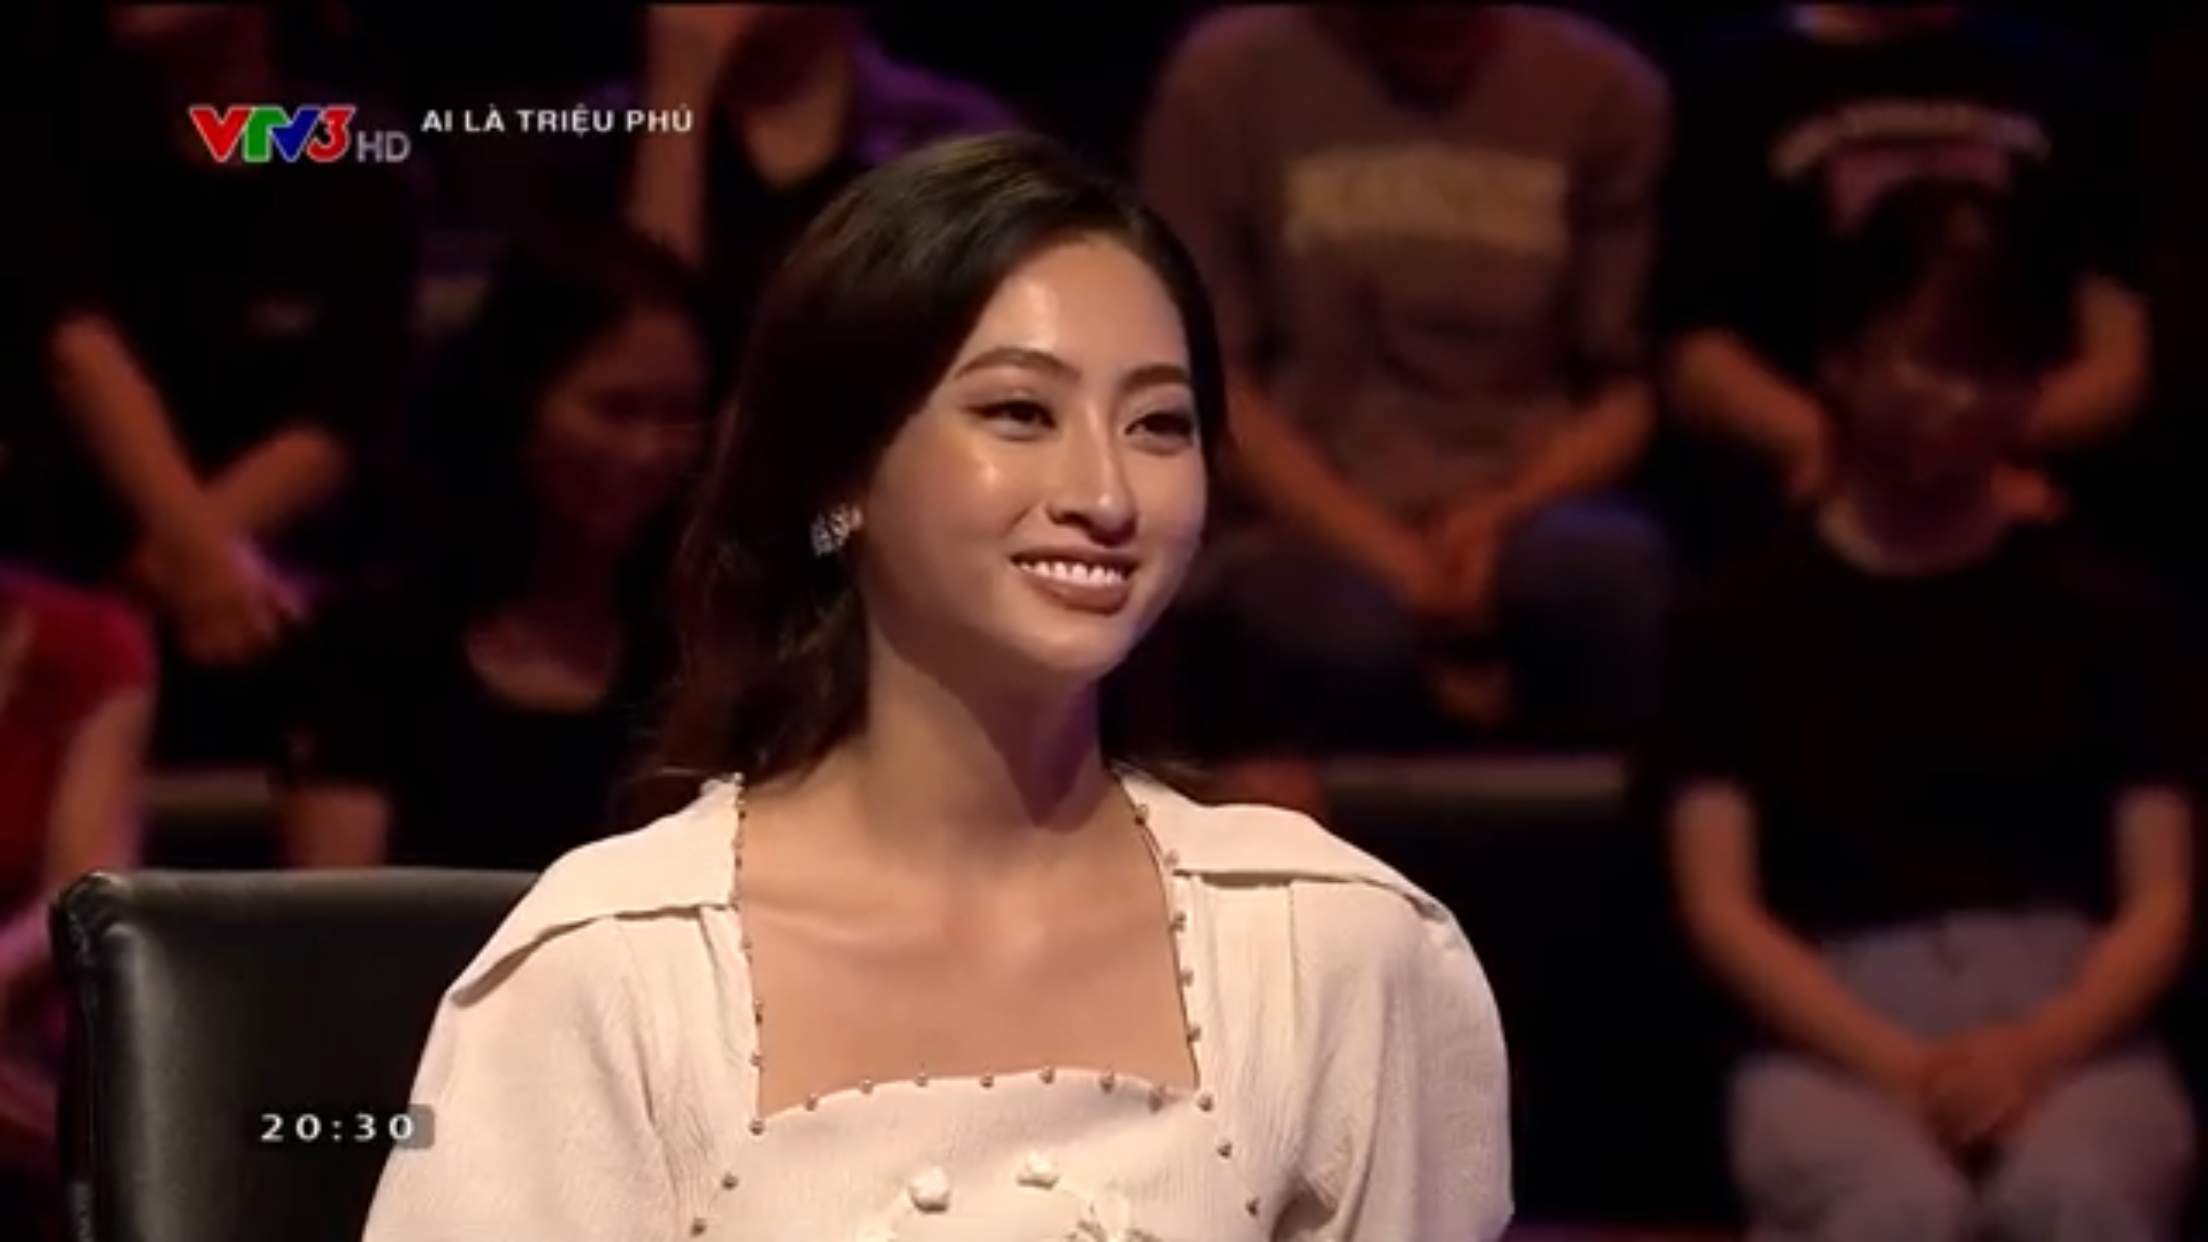 Hoa hậu Lương Thùy Linh xuất sắc vượt qua 11 câu hỏi của “Ai là triệu phú“. Ảnh: CMH.